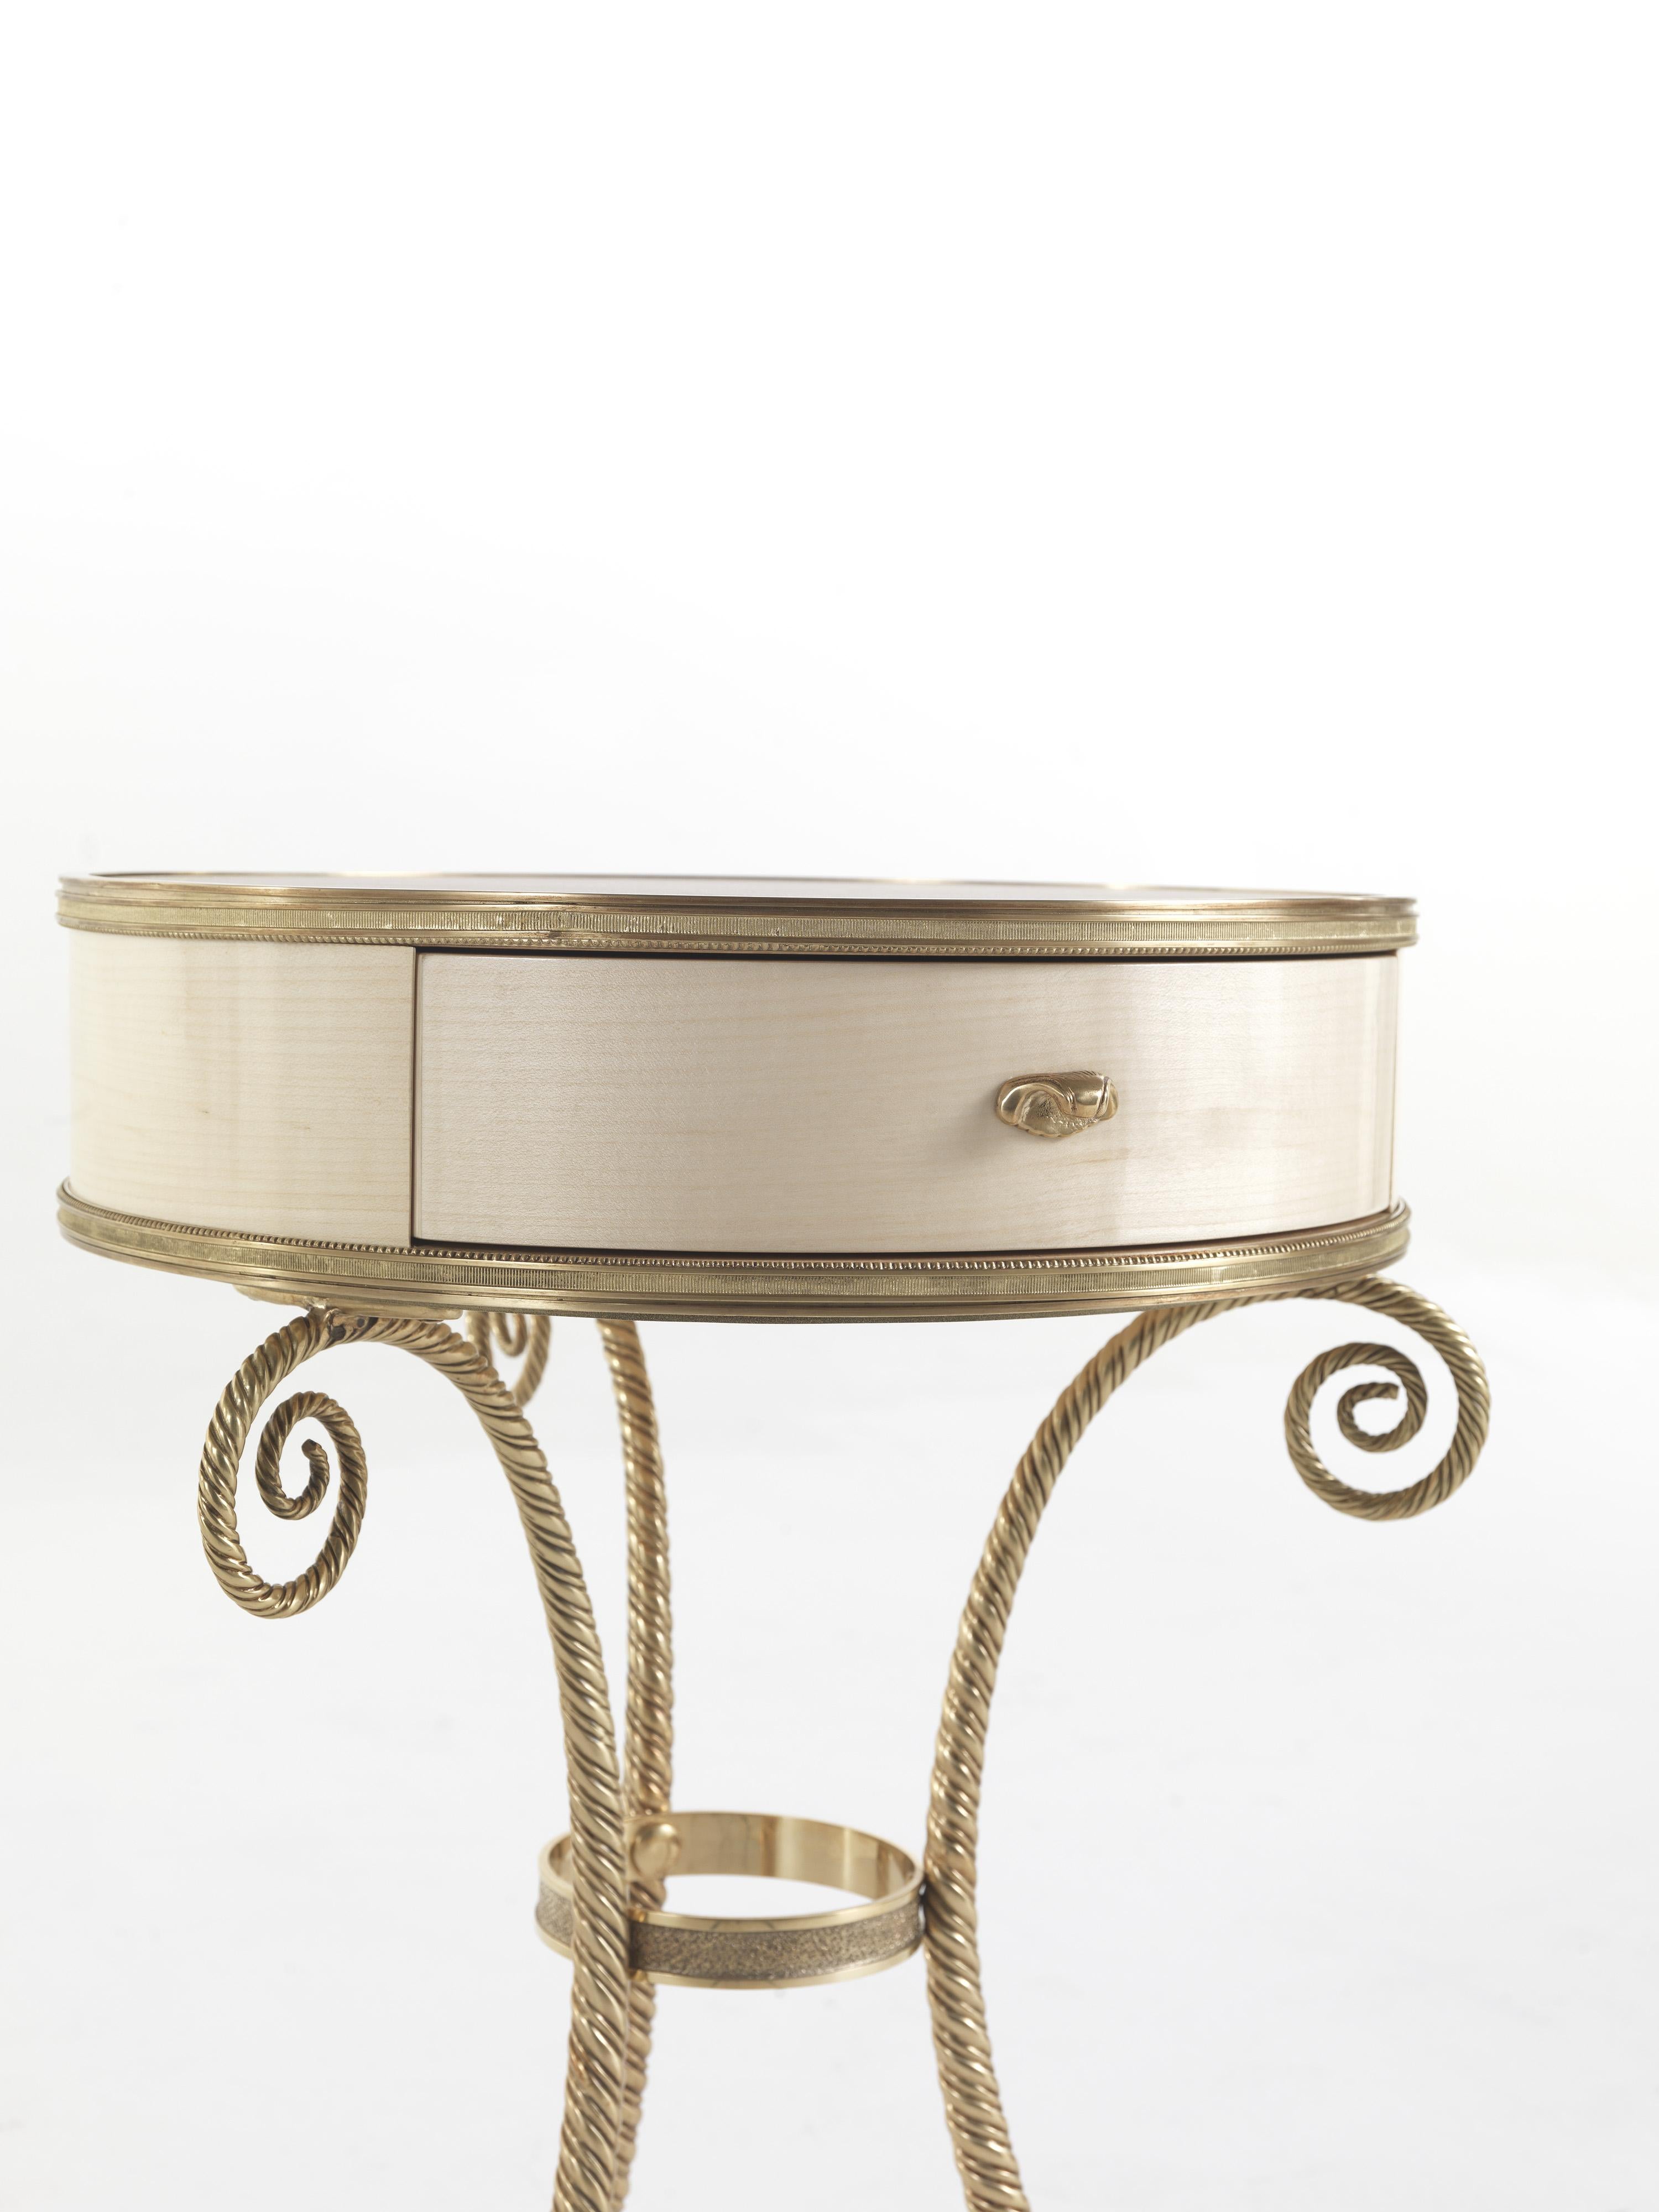 Elegant et gracieux, Torchon est une table de nuit de style Louis XIV, avec une base en laiton, une structure en érable et un plateau en cuir décoré. Il s'agit d'un support idéal pour les lampes, les livres et les magazines, qui rehausse le décor